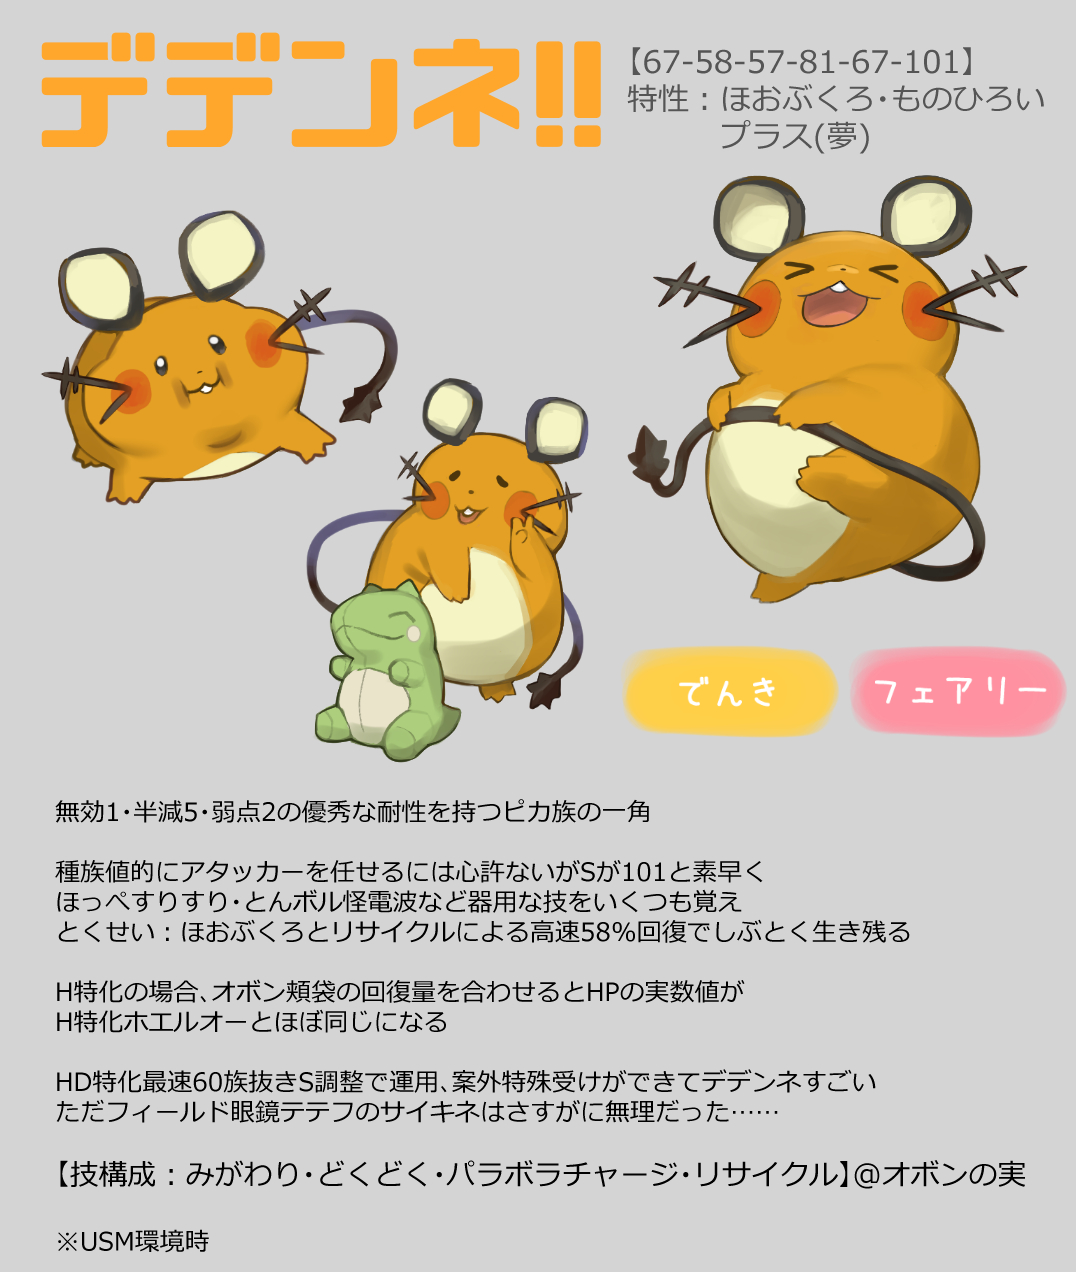 Dedenne Pokemon Drawn By Atte Nanakusa Danbooru